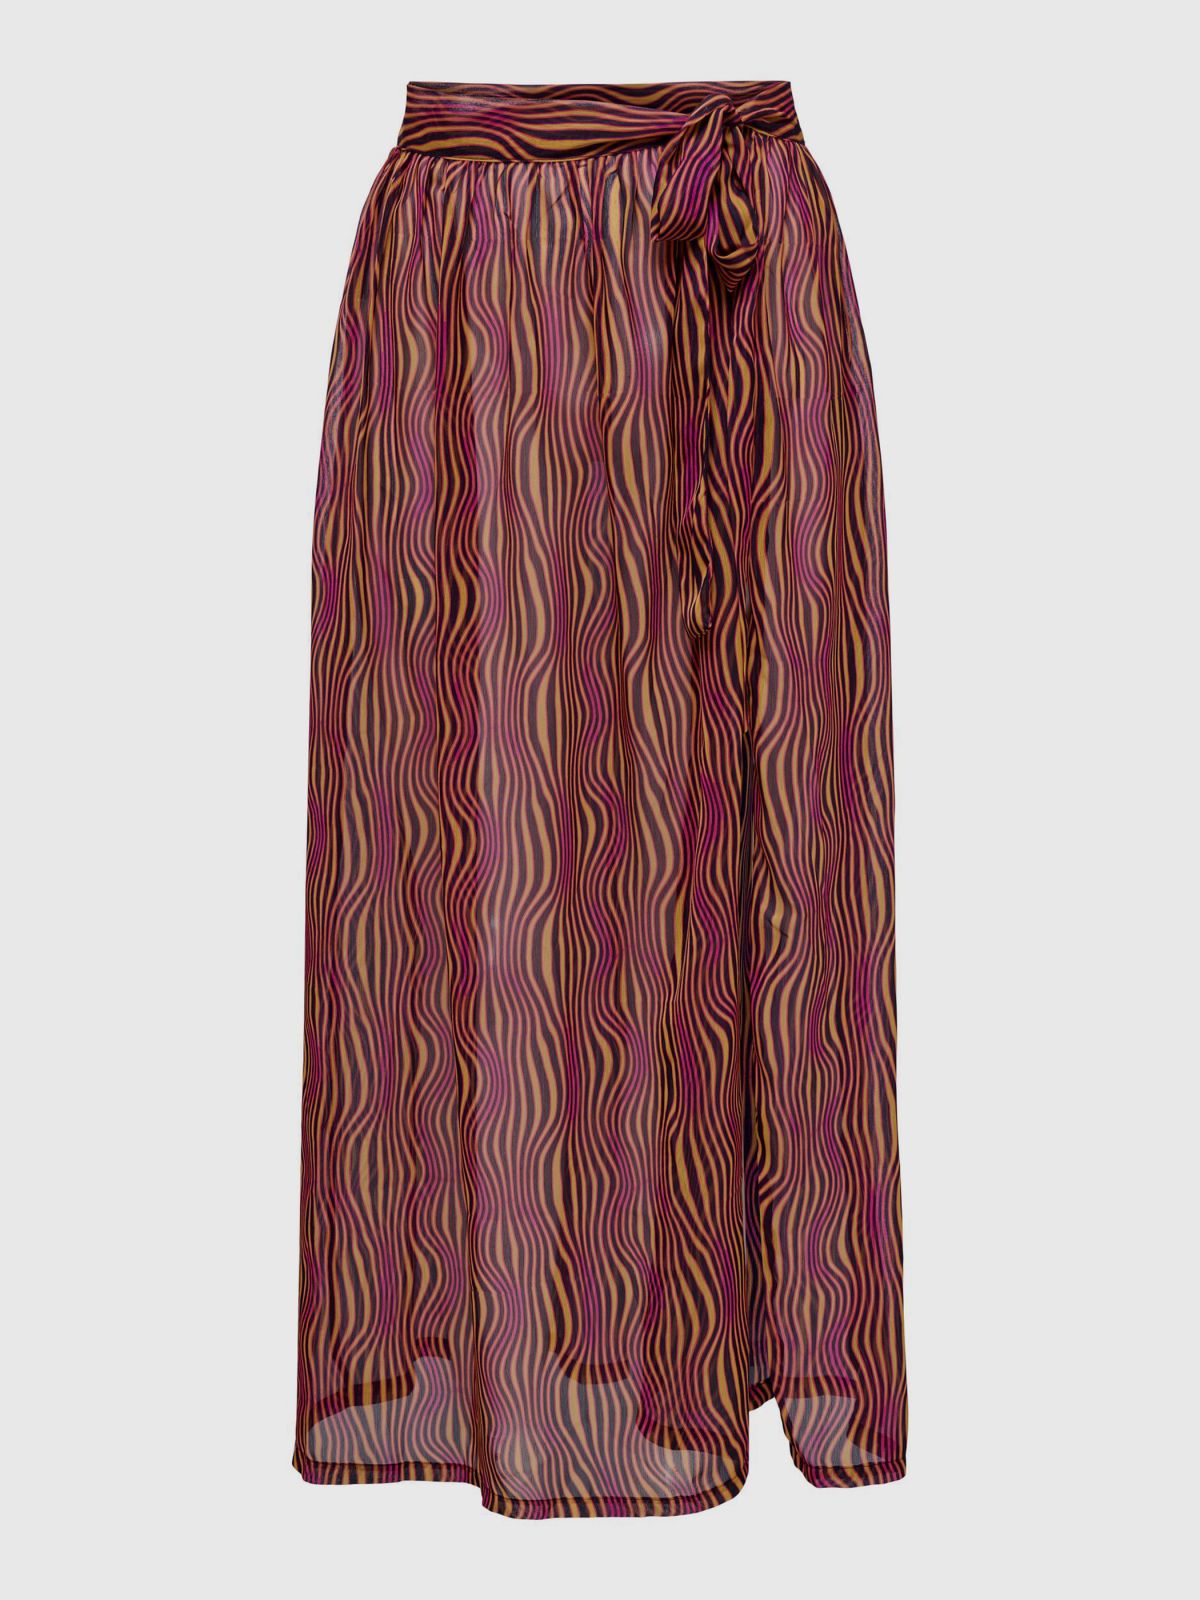  חצאית חוף שקפקפה בהדפס / נשים של ONLY